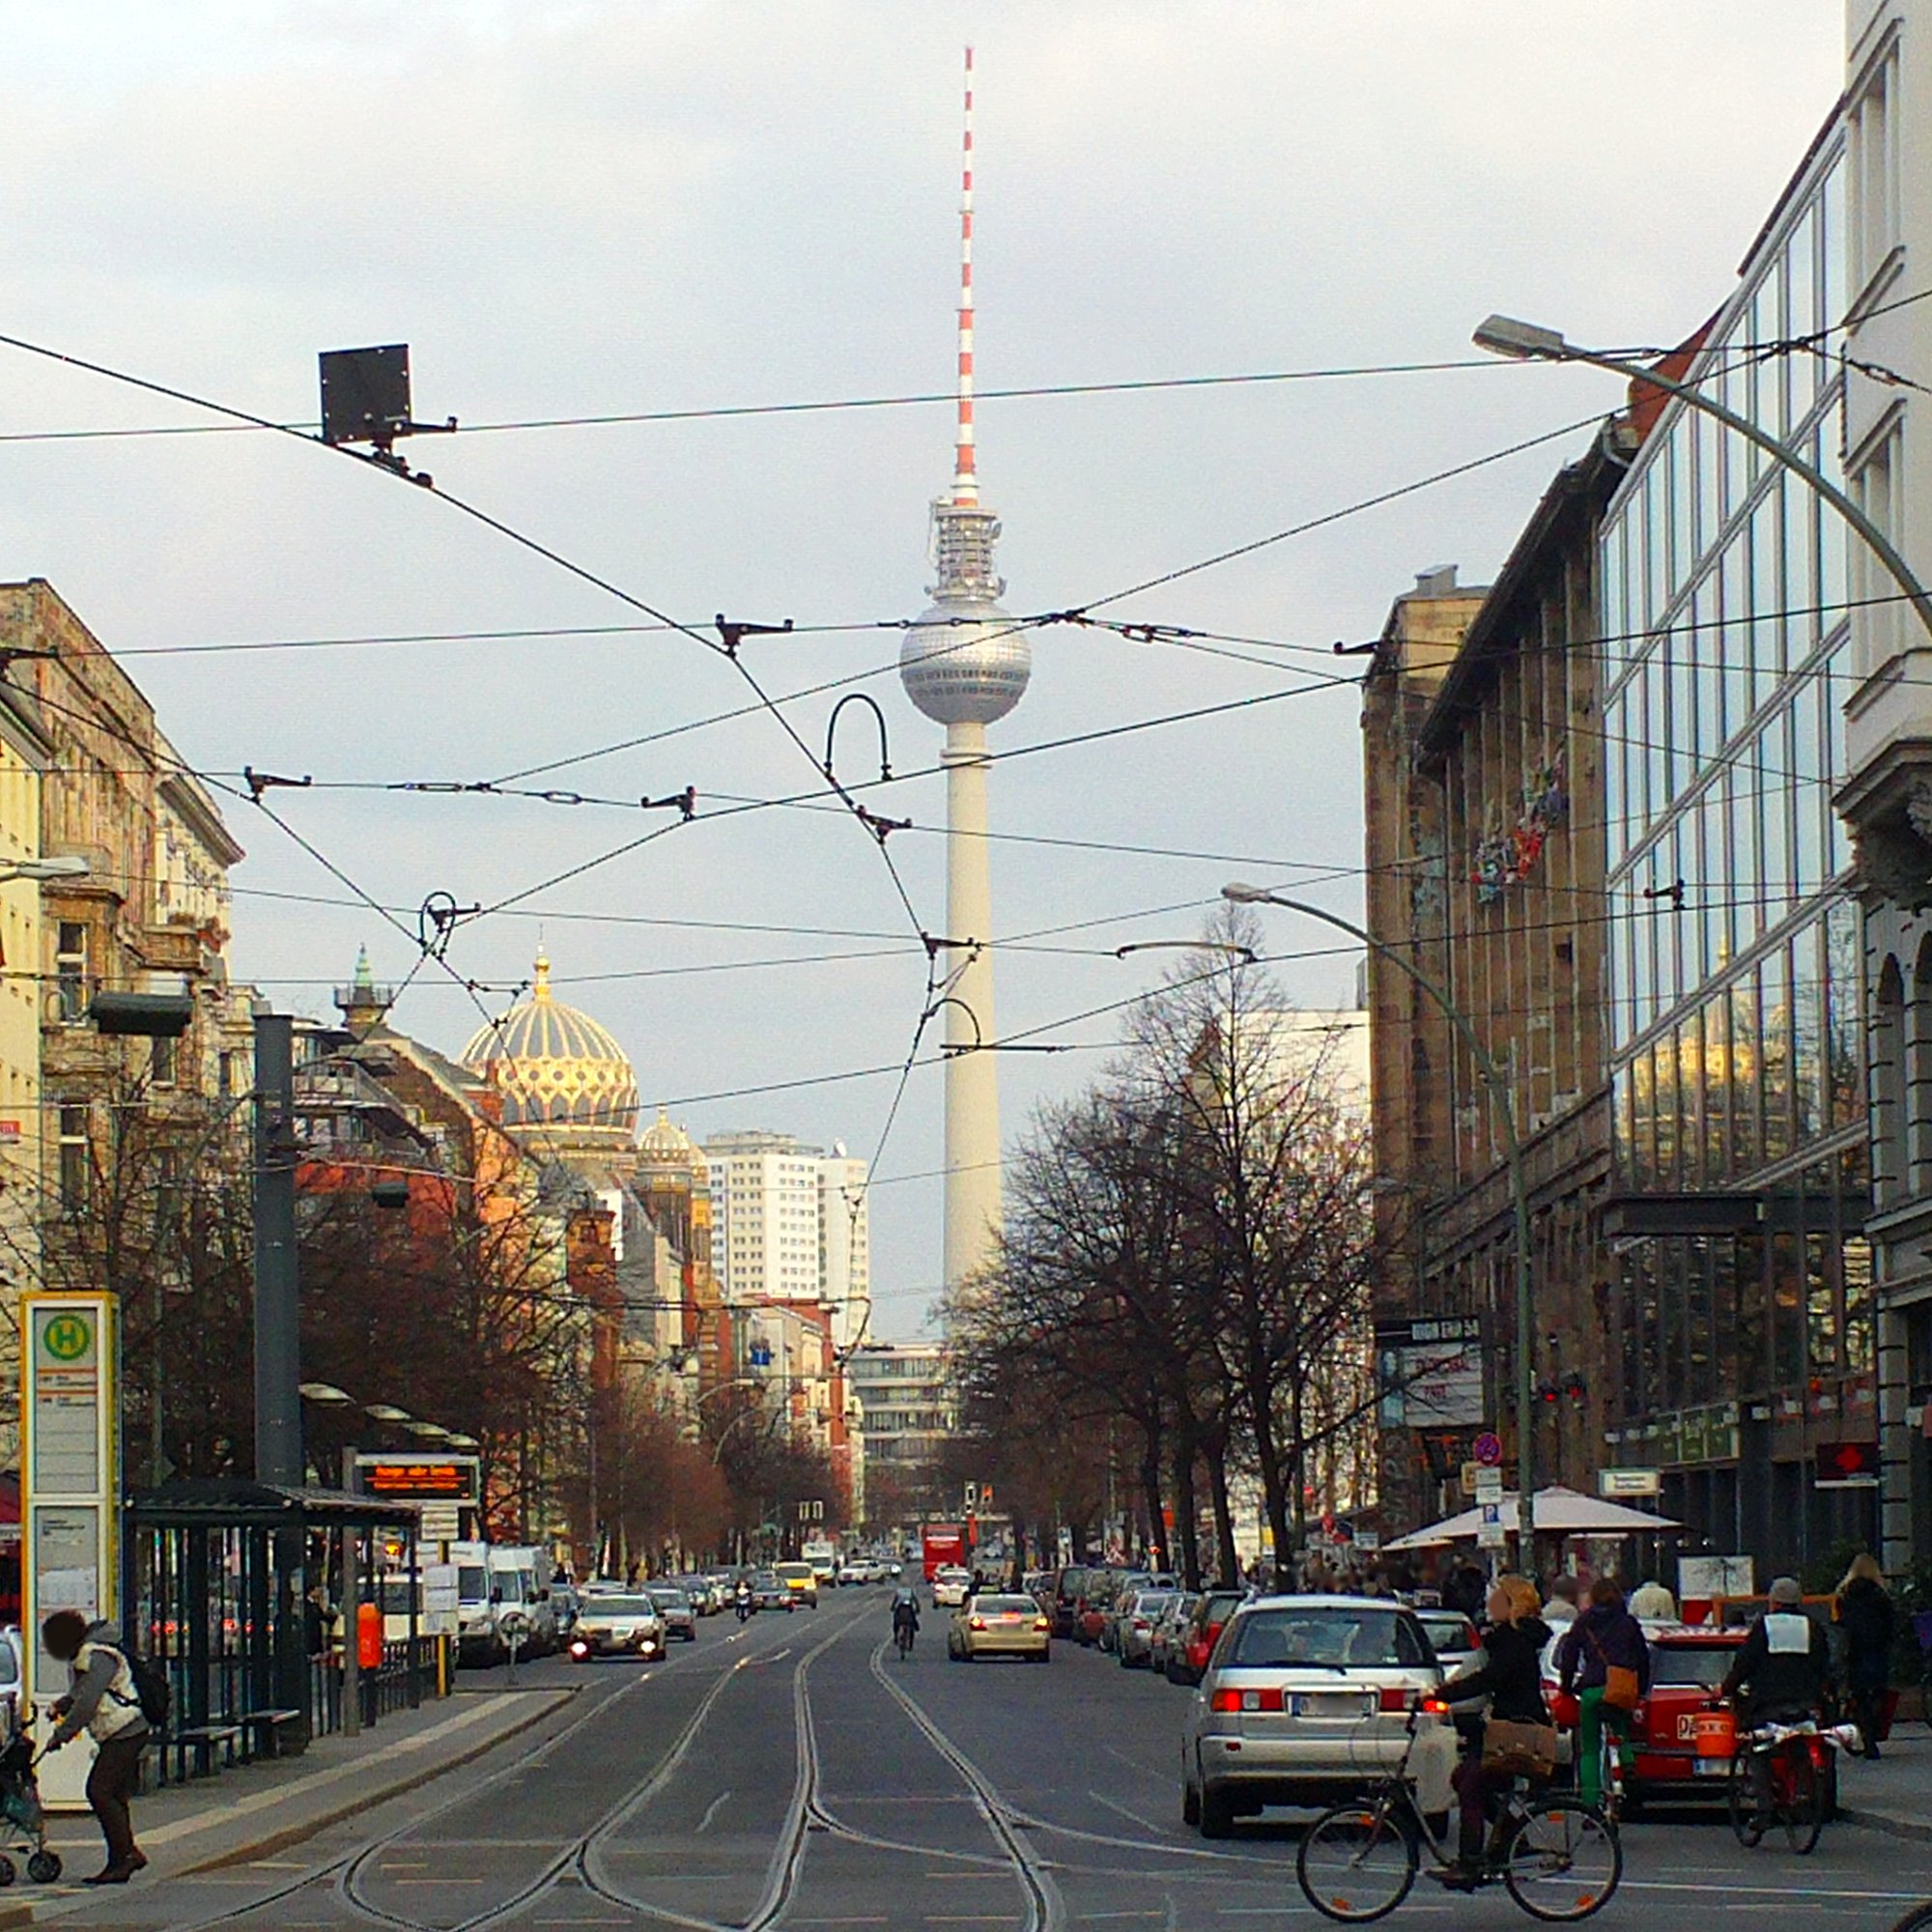 Berlin-Mitte, Oranienburgerstrasse